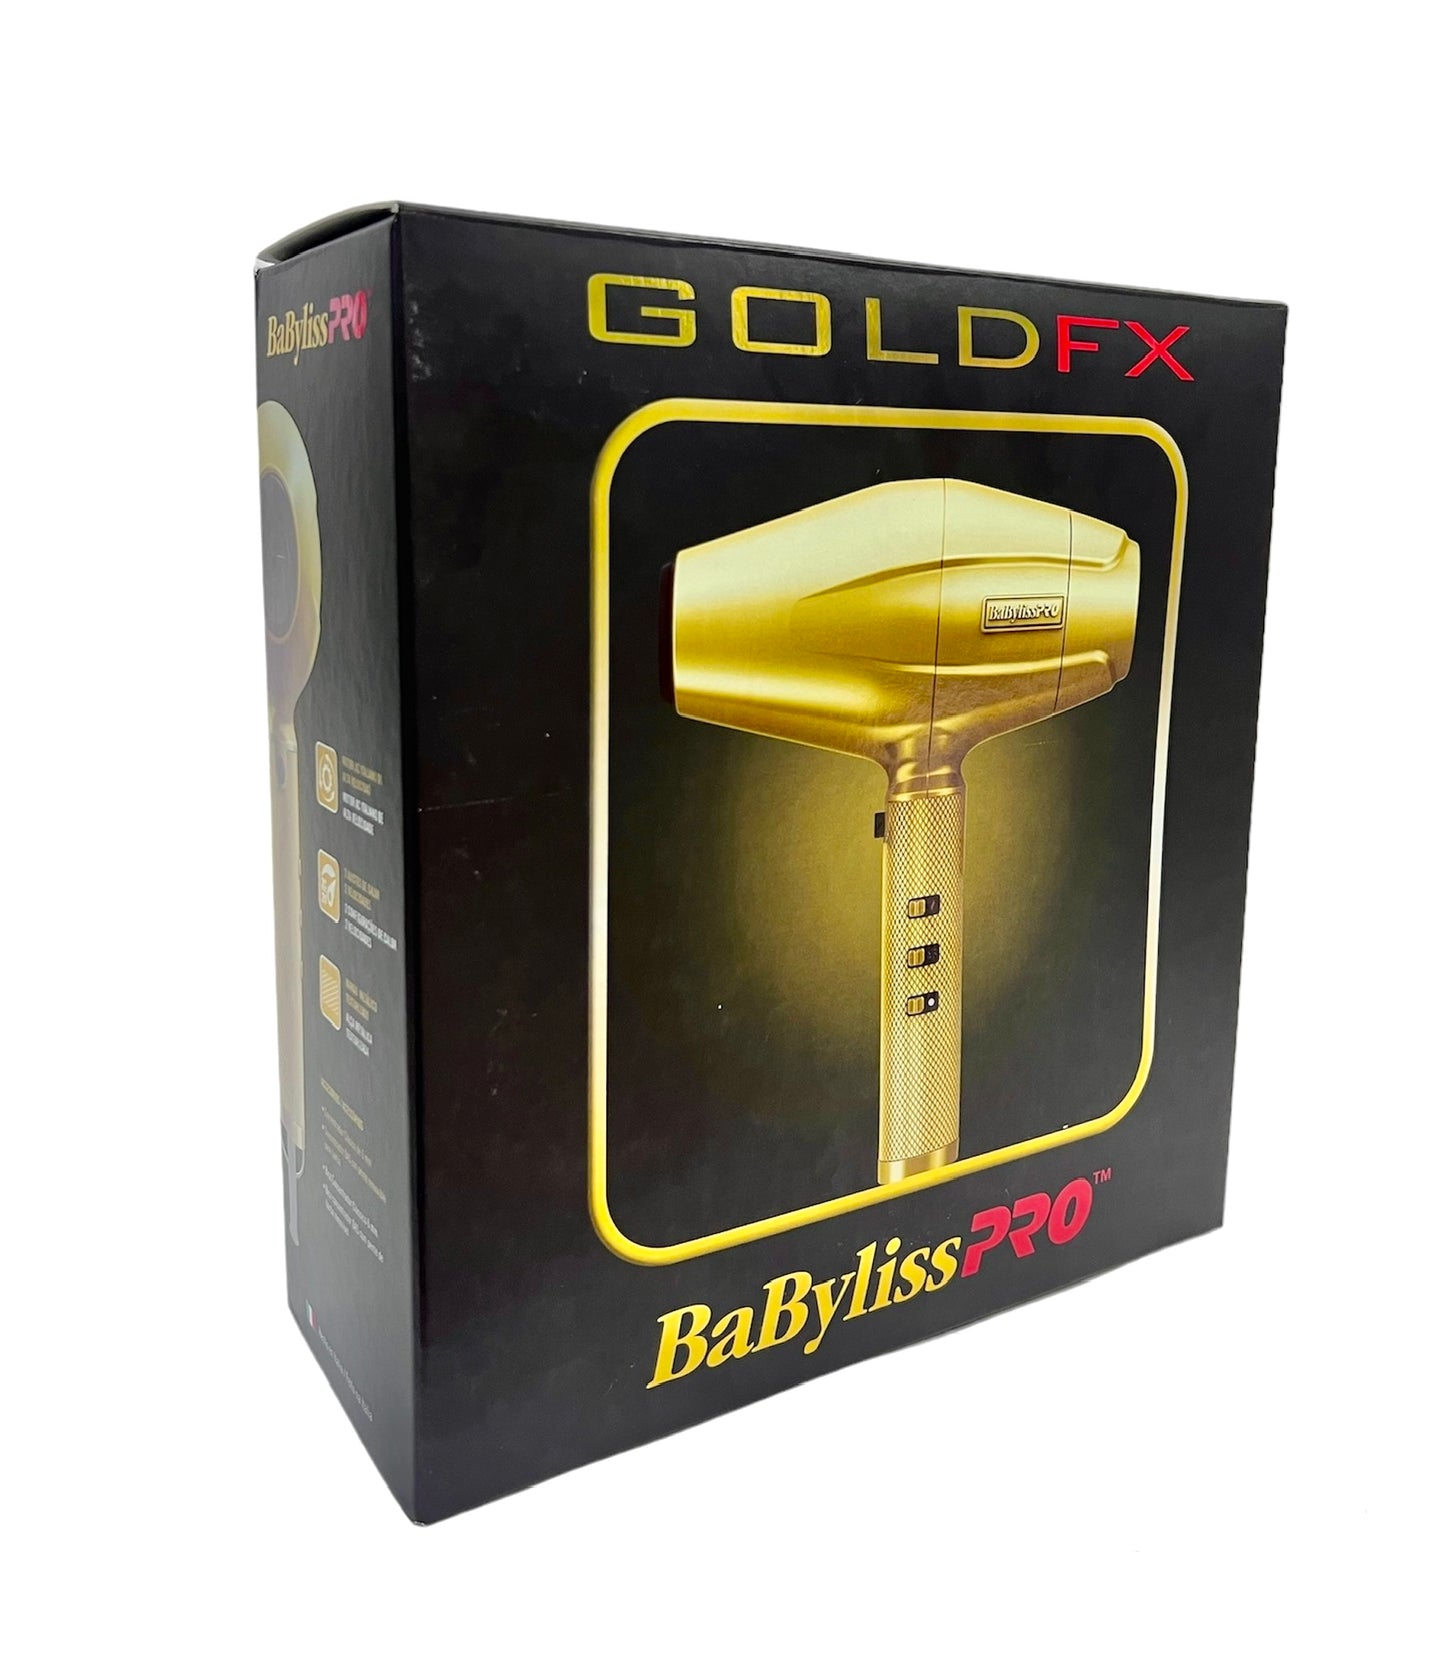 Secador Babyliss GOLD FX